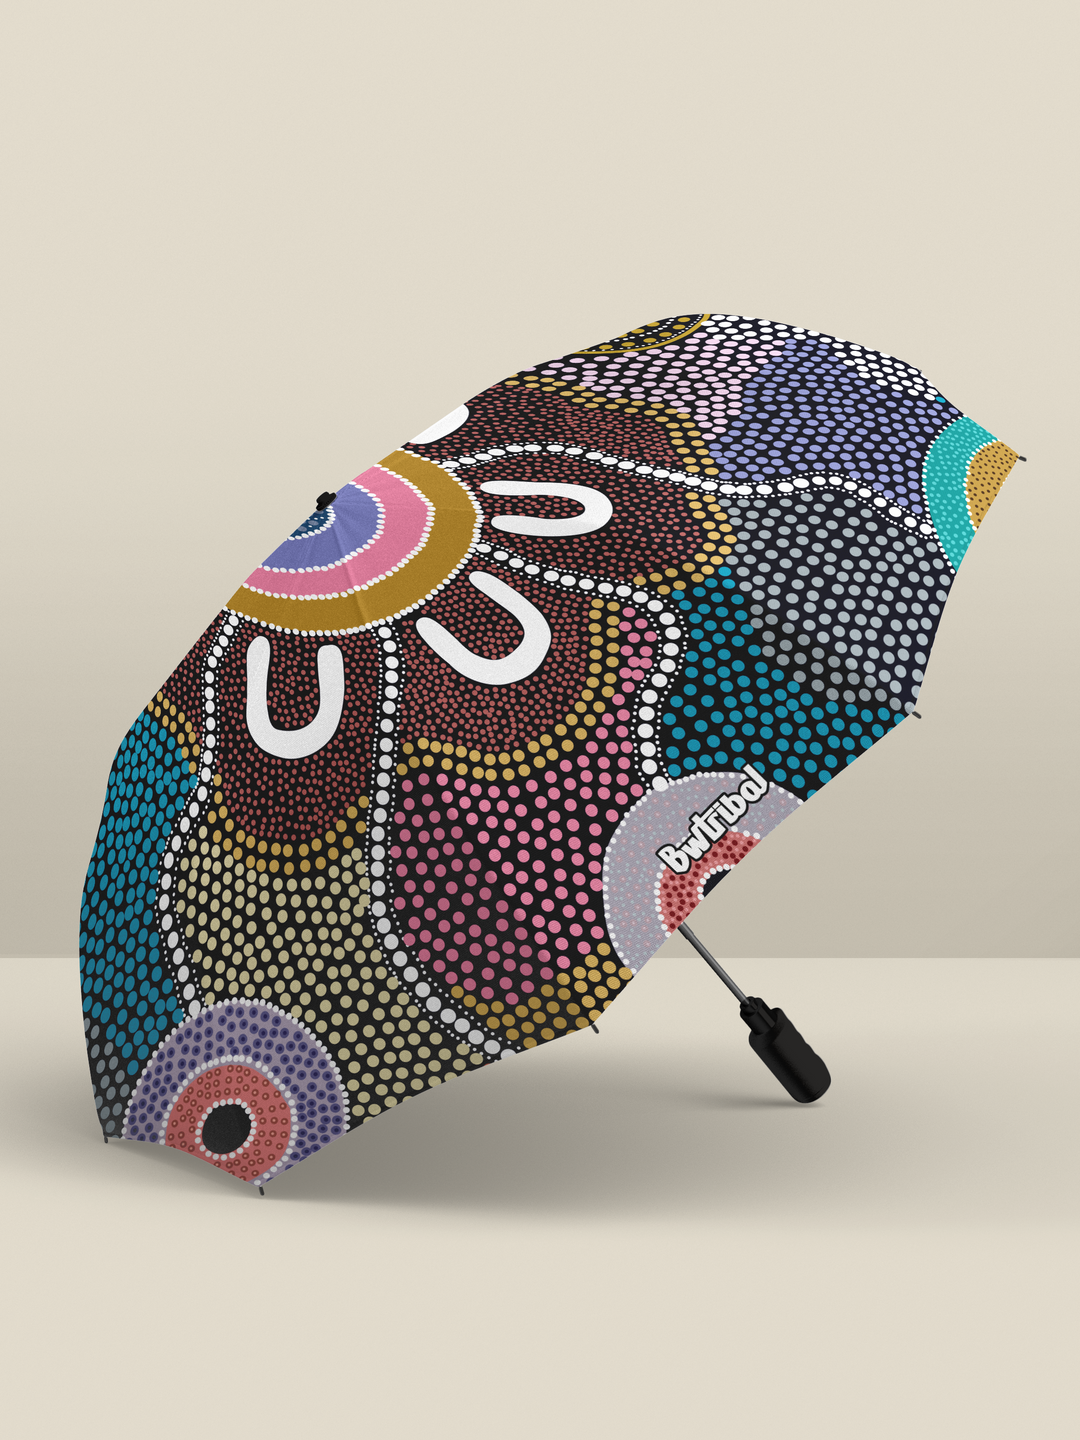 Family Journey - Umbrella